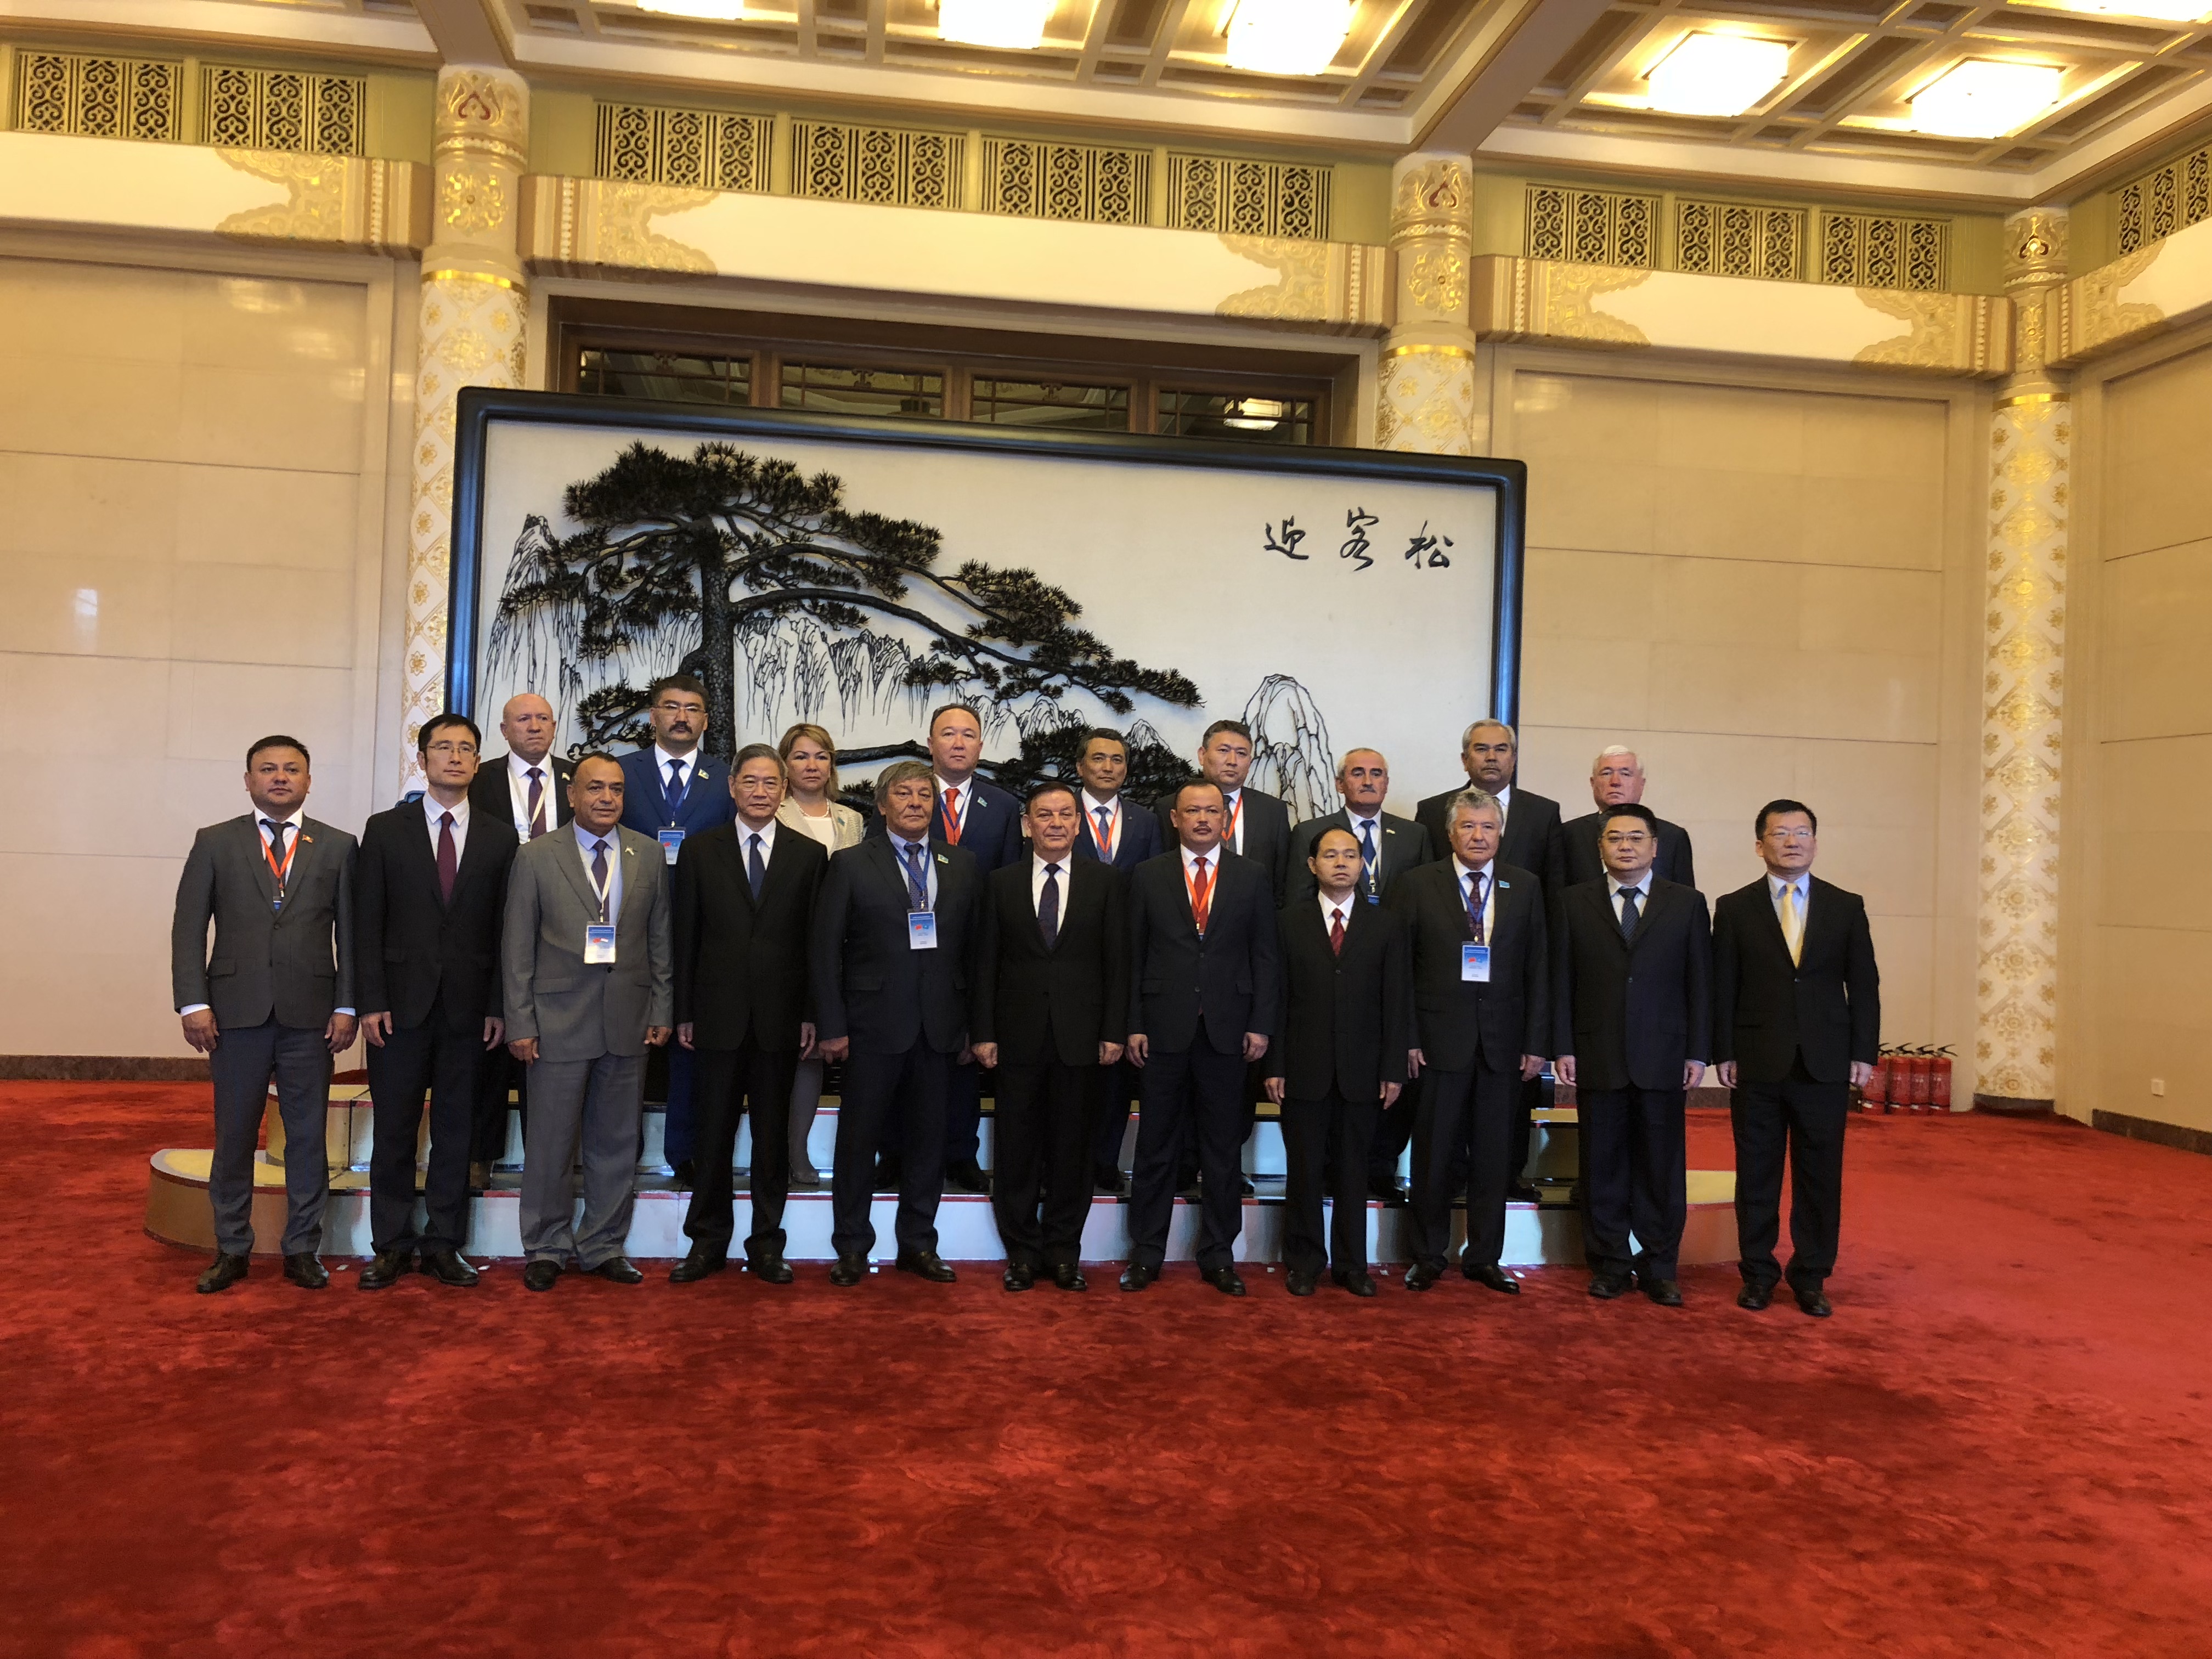 Мәжіліс депутаттары ағымдағы жылдың 3-12 шілдесі аралығында Қытай Халық Республикасында өткен Орталық Азия елдері парламенттерінің тақырыптық семинарларына қатысты